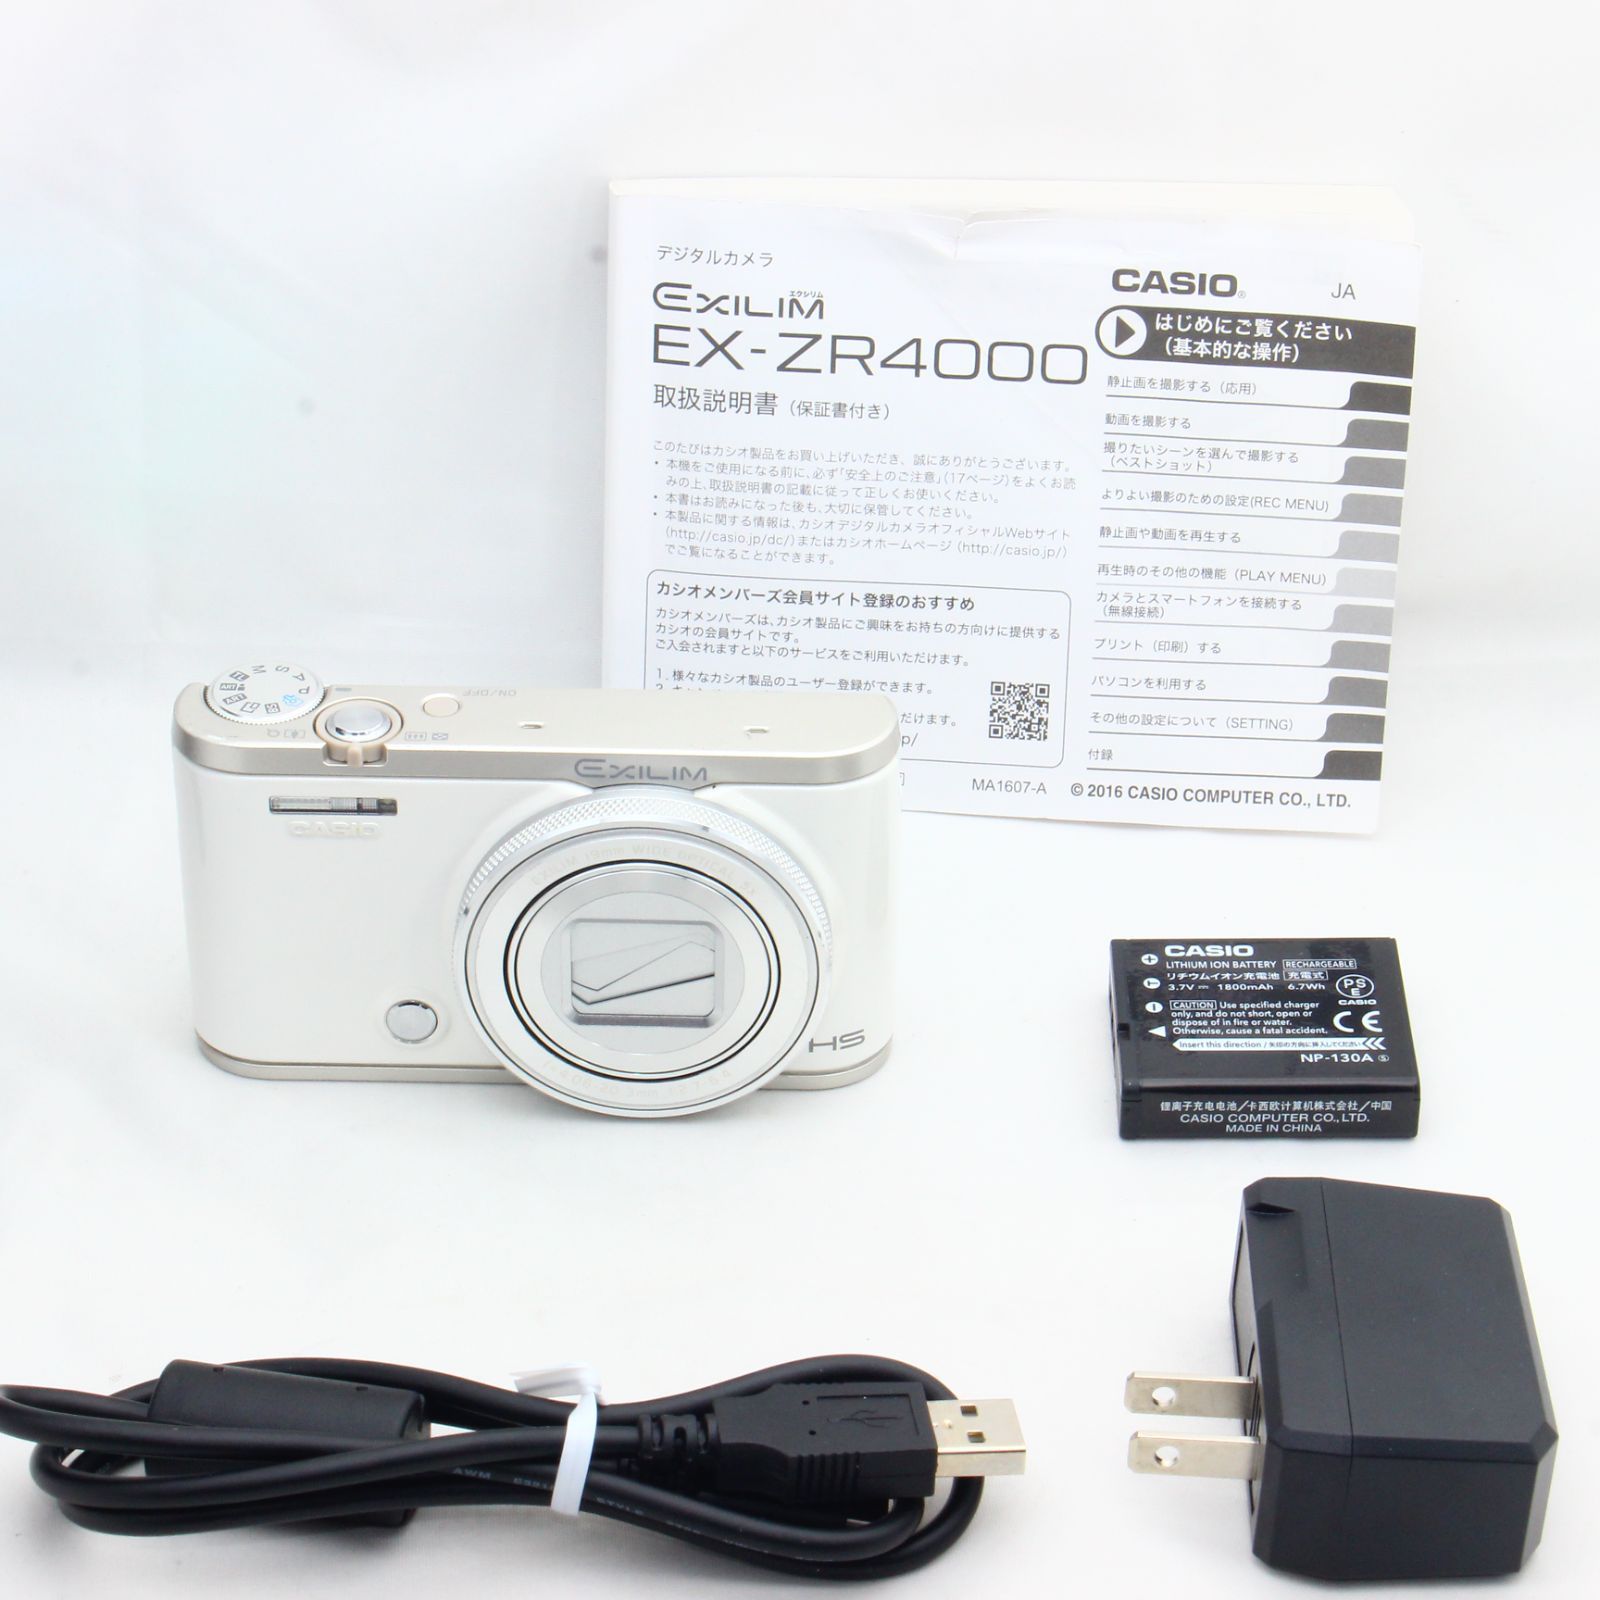 CASIO デジタルカメラ EXILIM EX-ZR4000WE ホワイト - M&T Camera